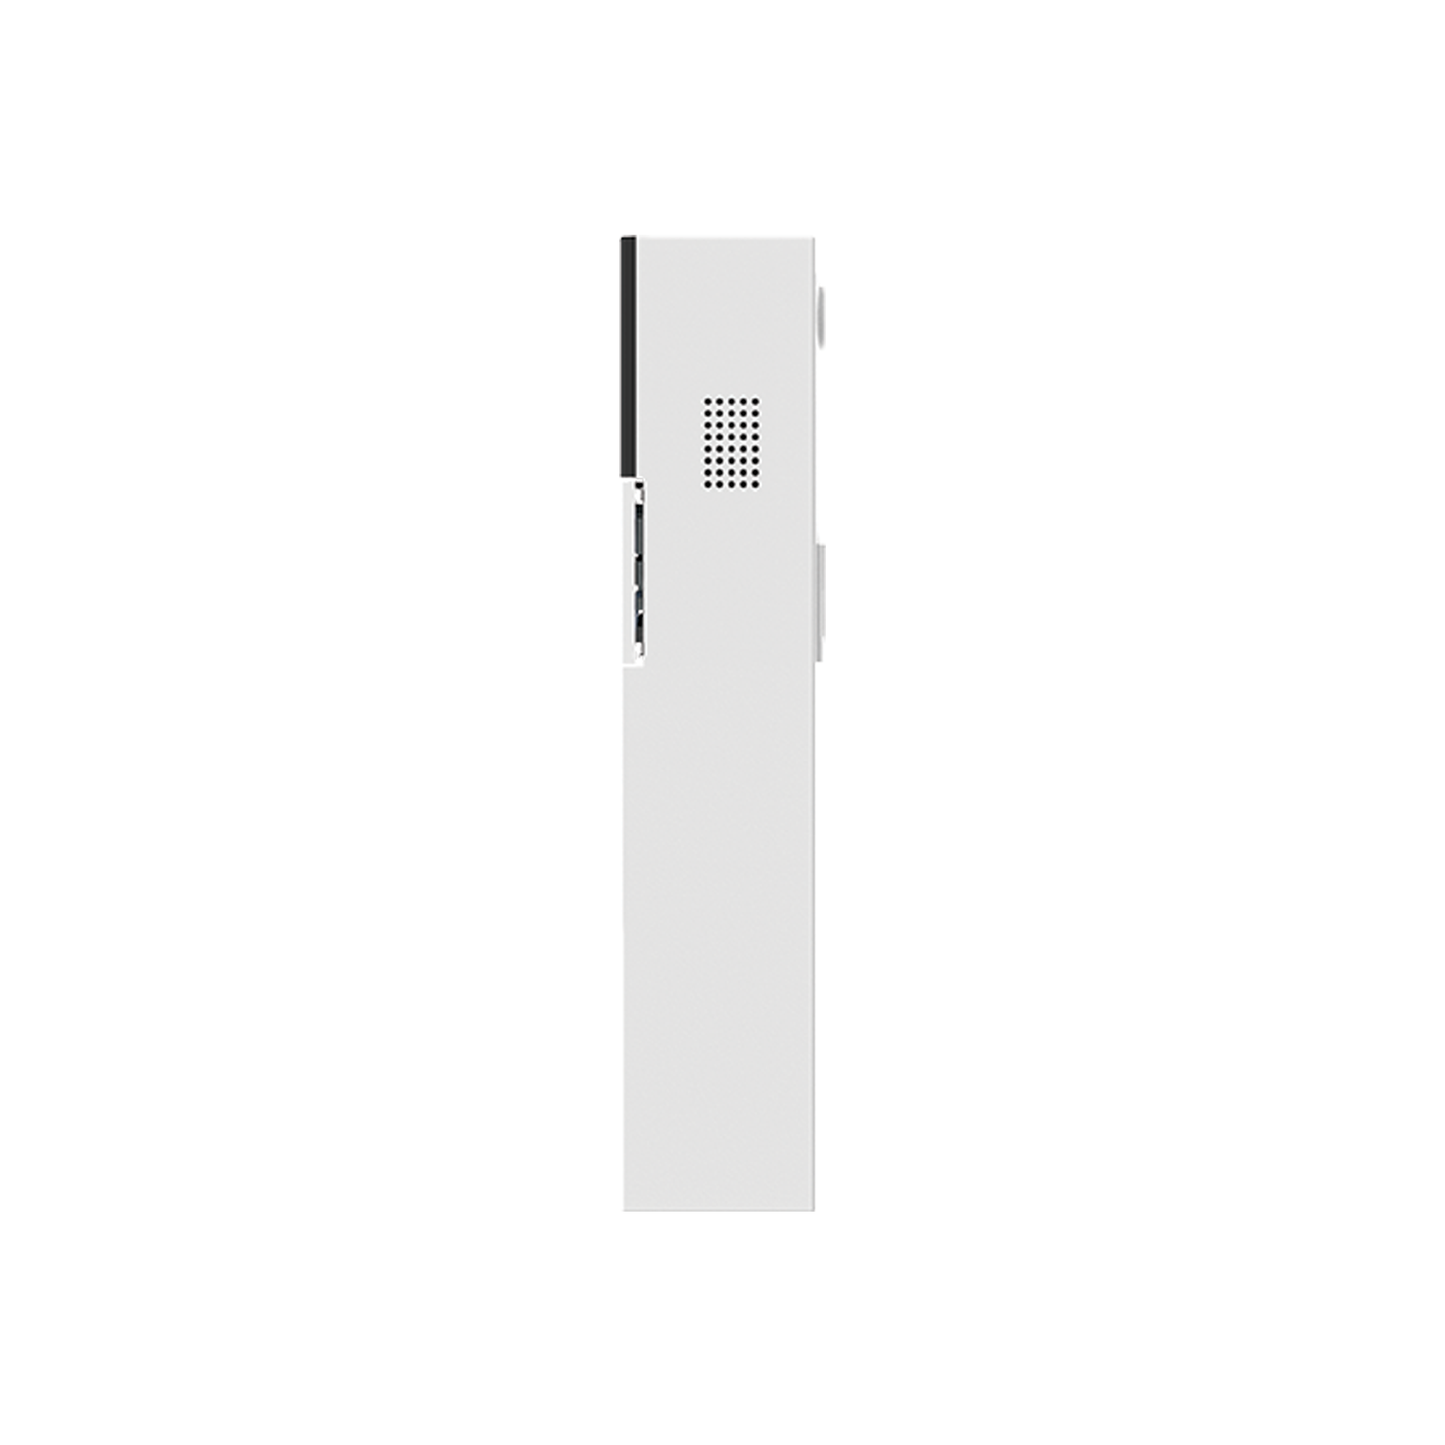 SPEED - 2K (2304x1296) Doorbell